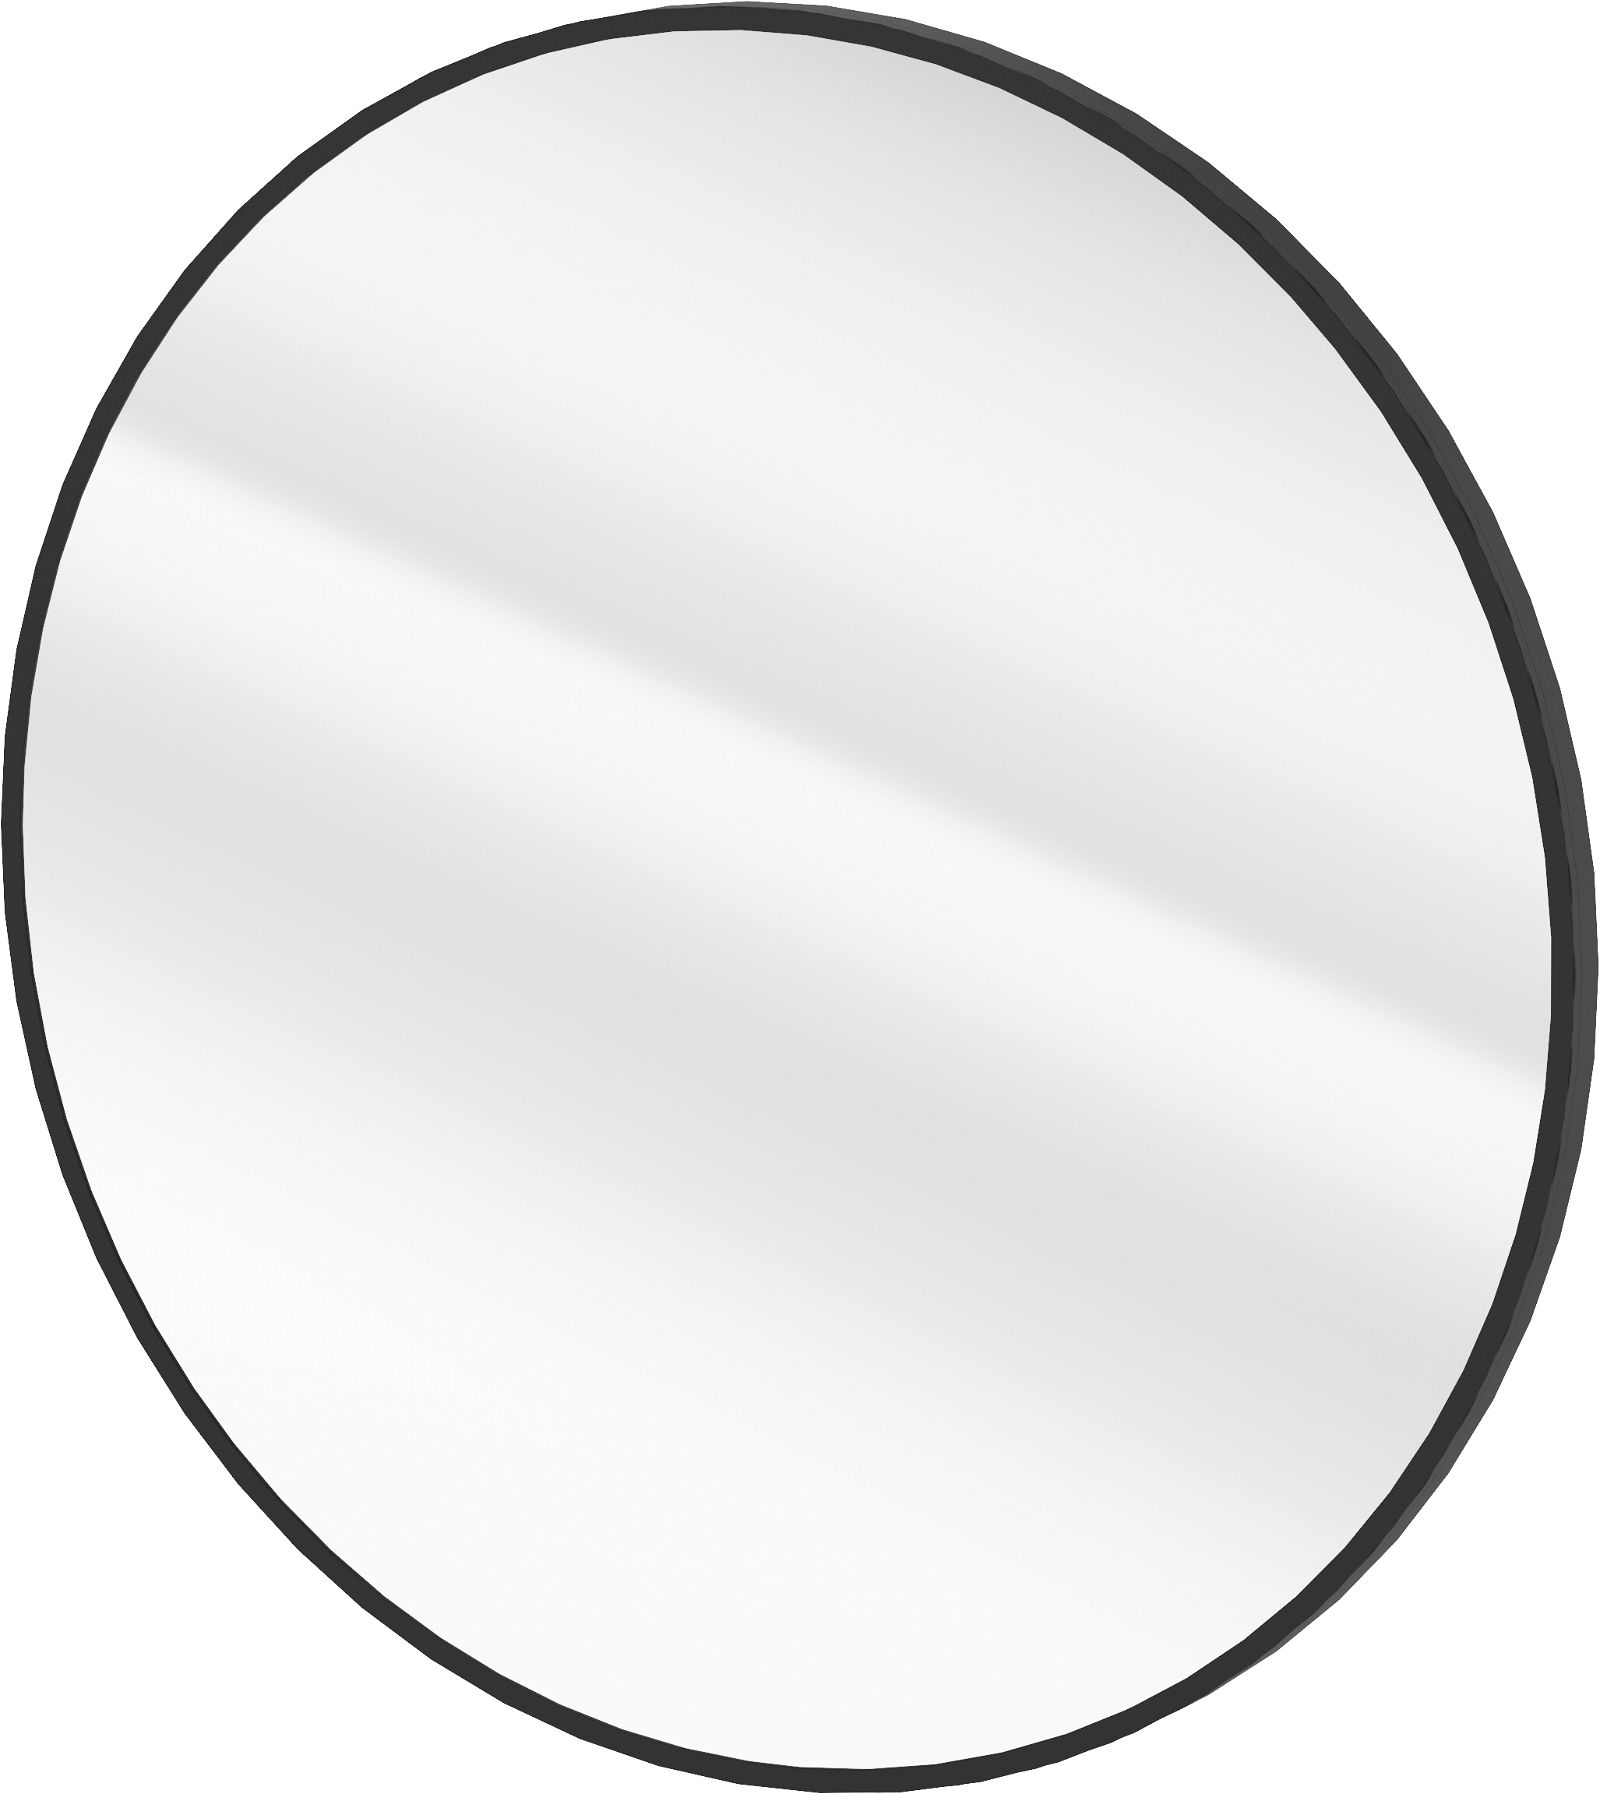 Mirror, hanging, in a frame - round - ADR_N831 - Główne zdjęcie produktowe